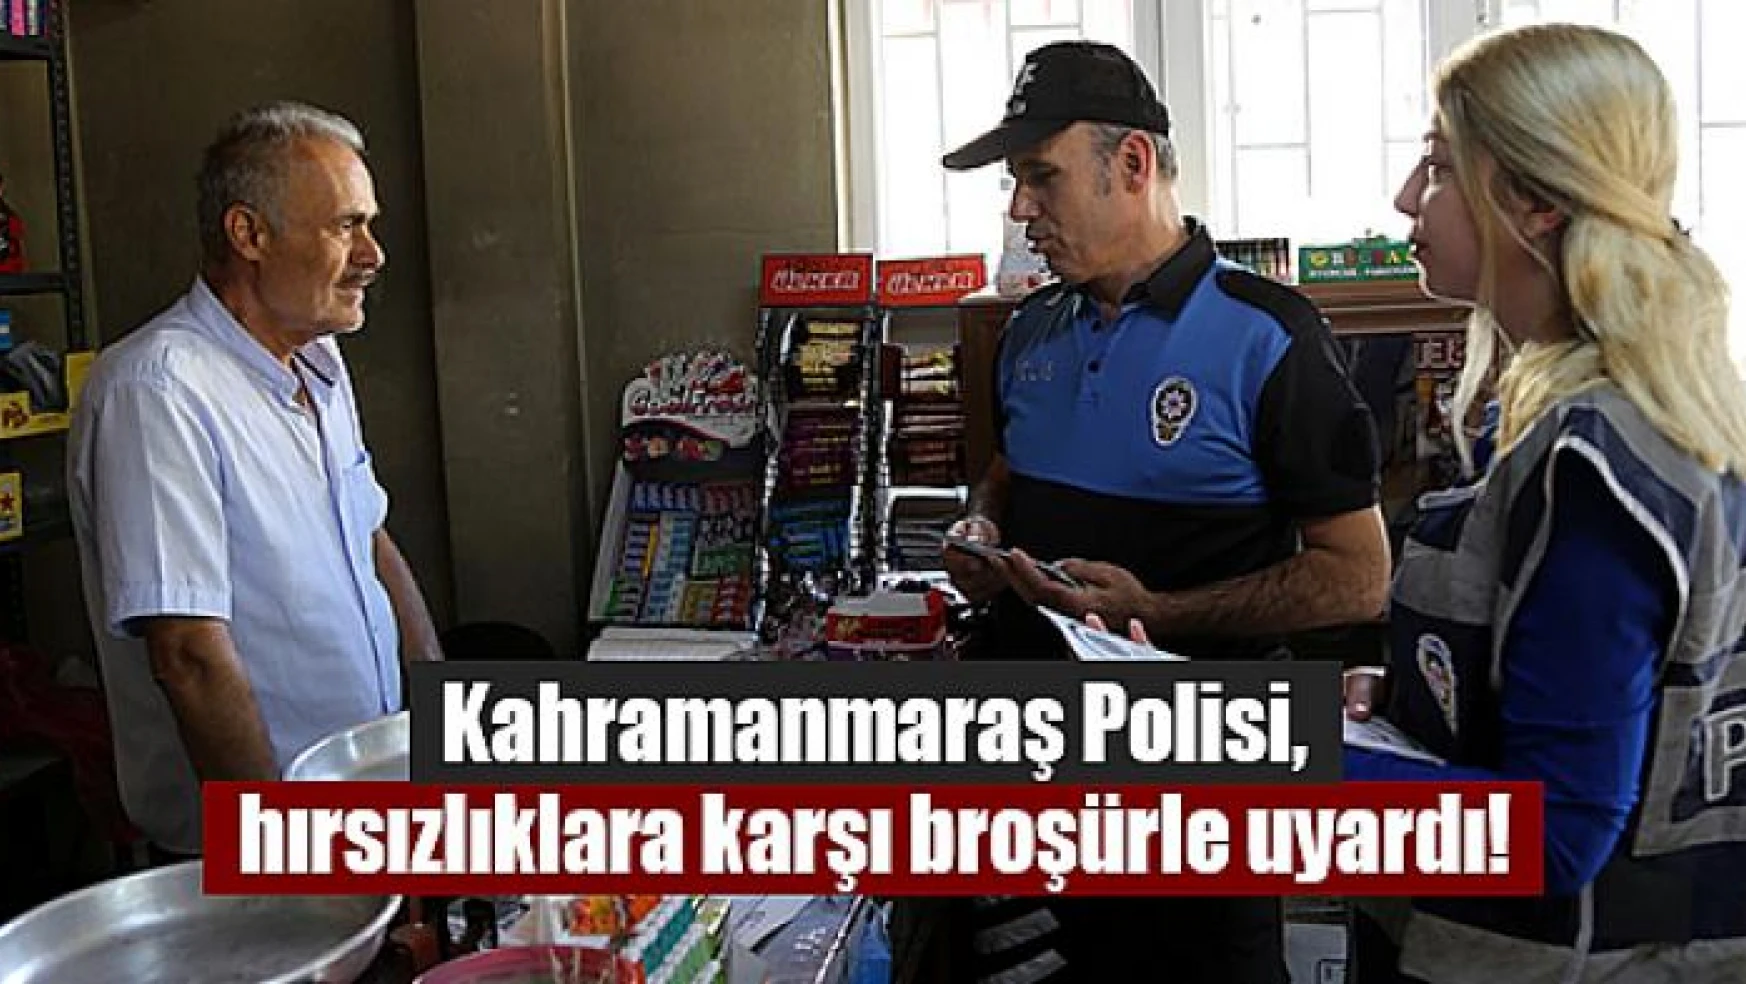 Kahramanmaraş Polisi, hırsızlıklara karşı broşürle uyardı!